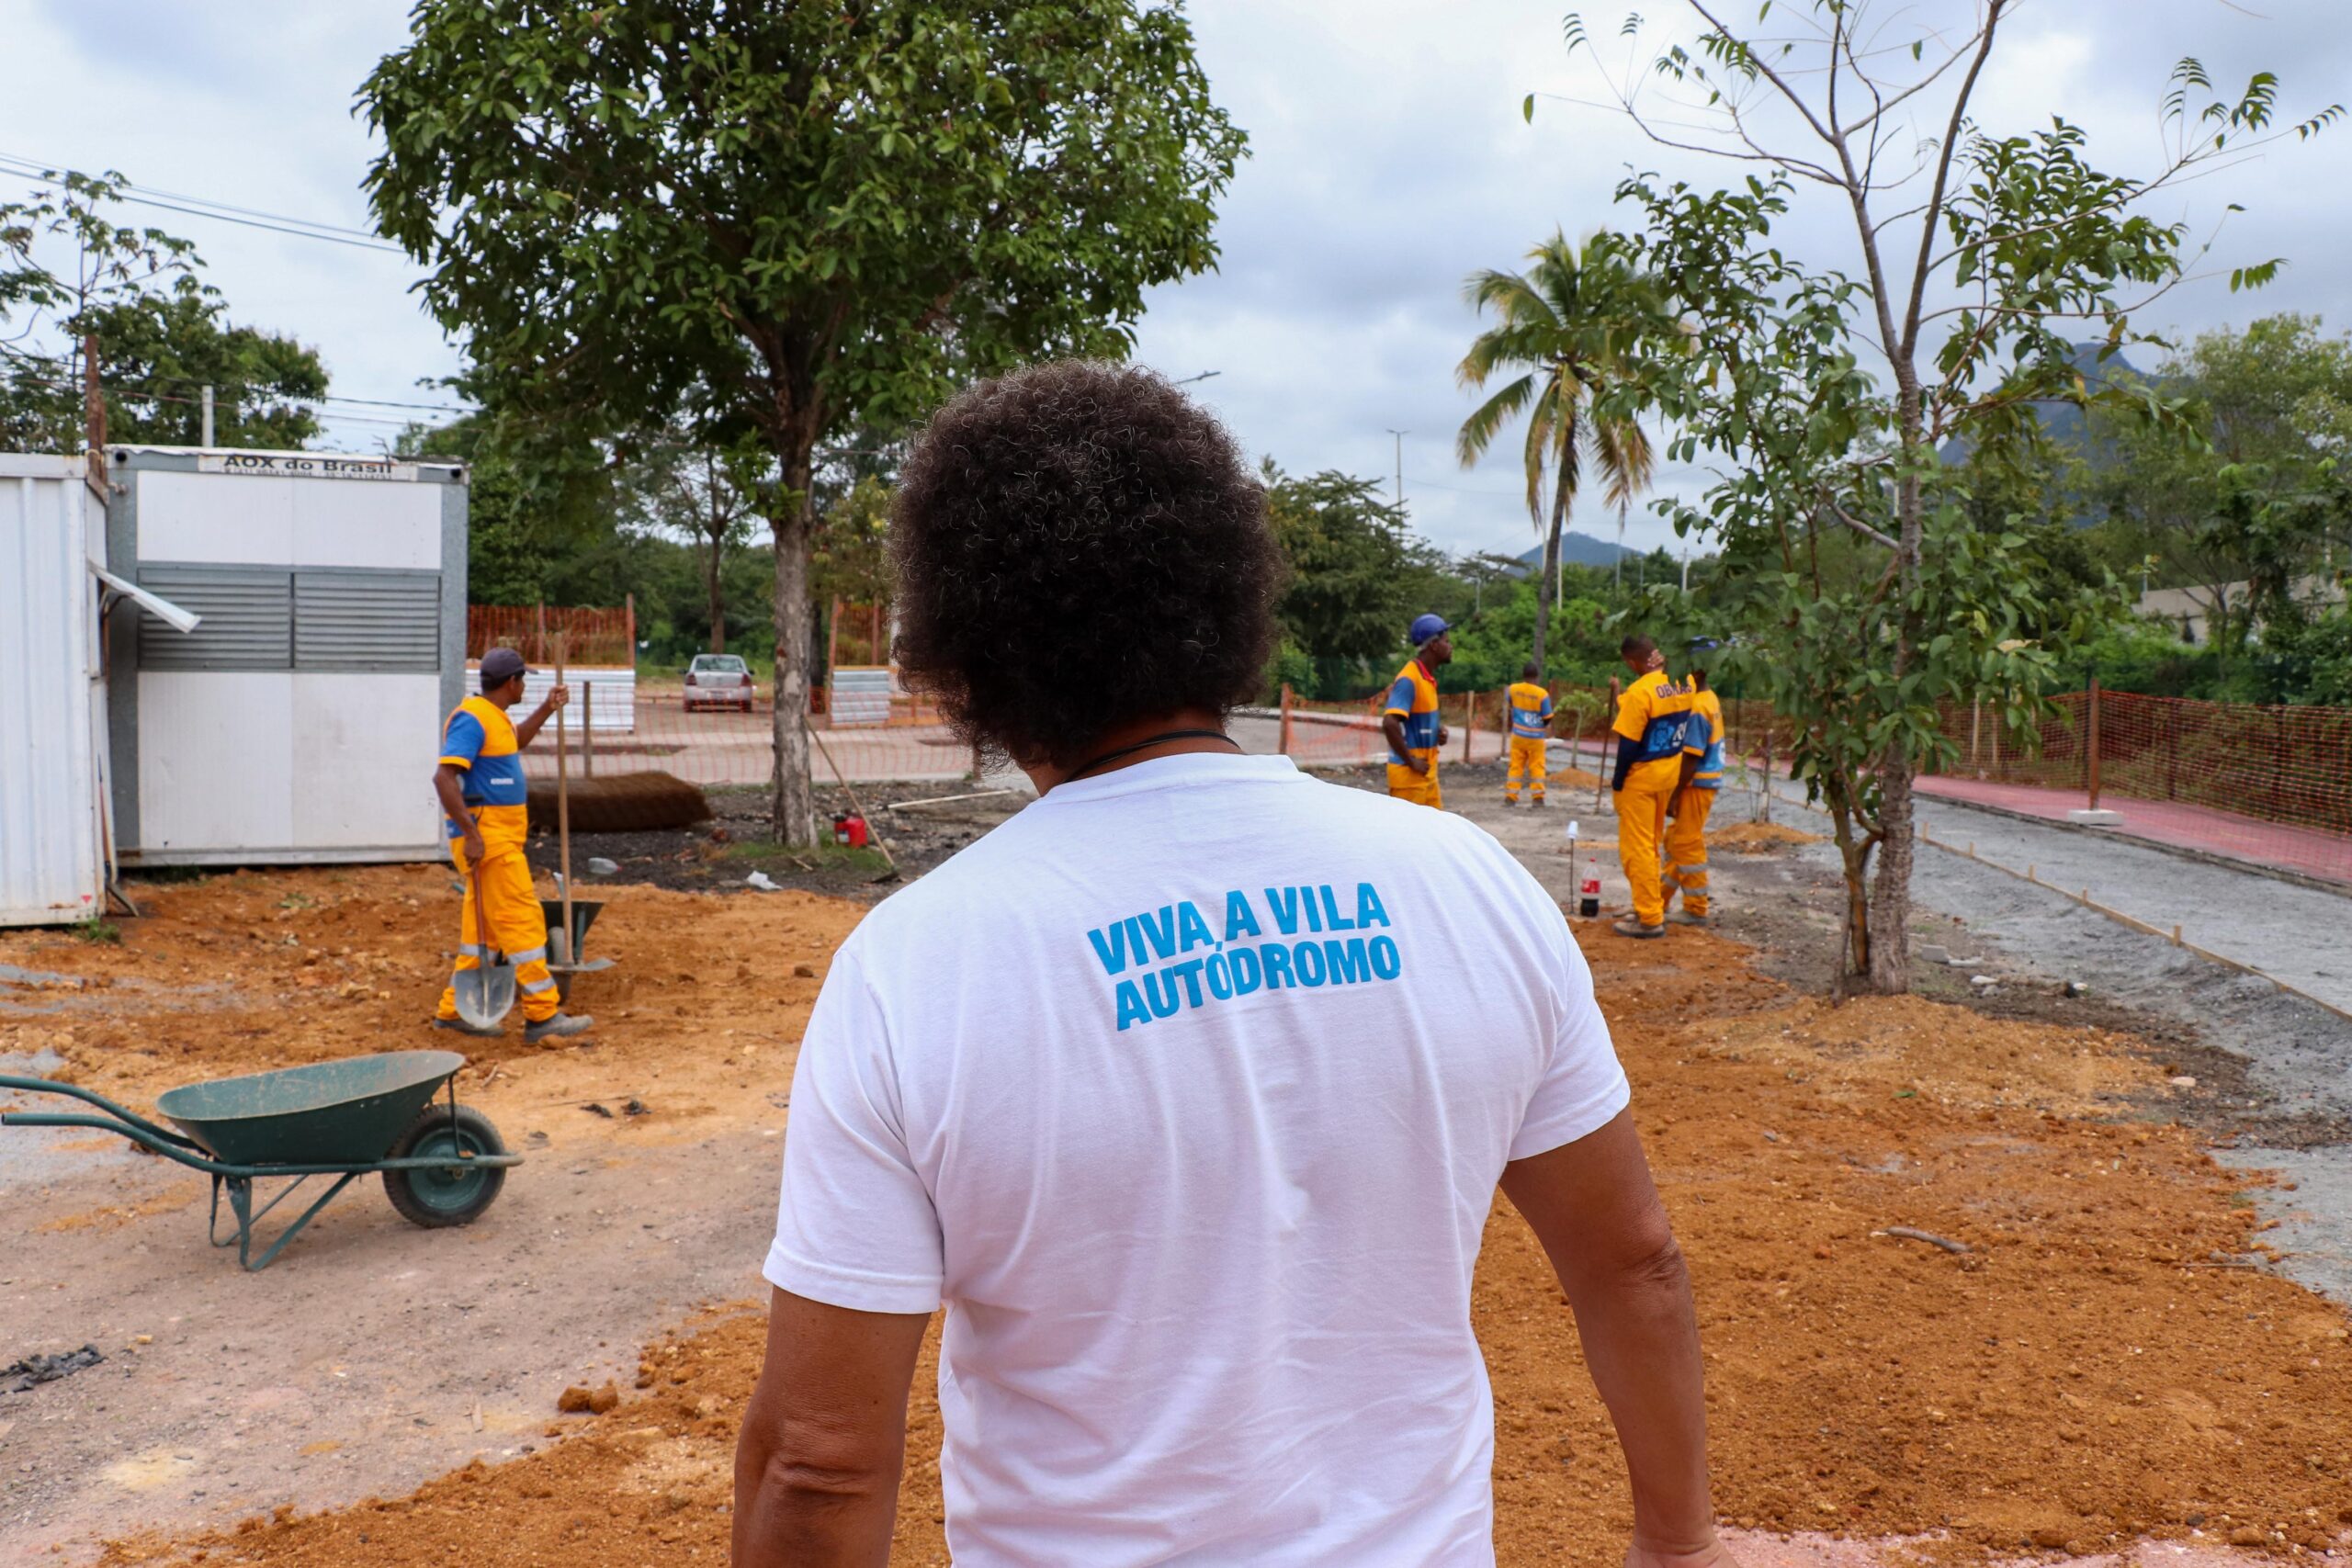 Luiz Cláudio acompanha diariamente o andamento das obras na Vila Autódromo. Foto: Alexandre Cerqueira